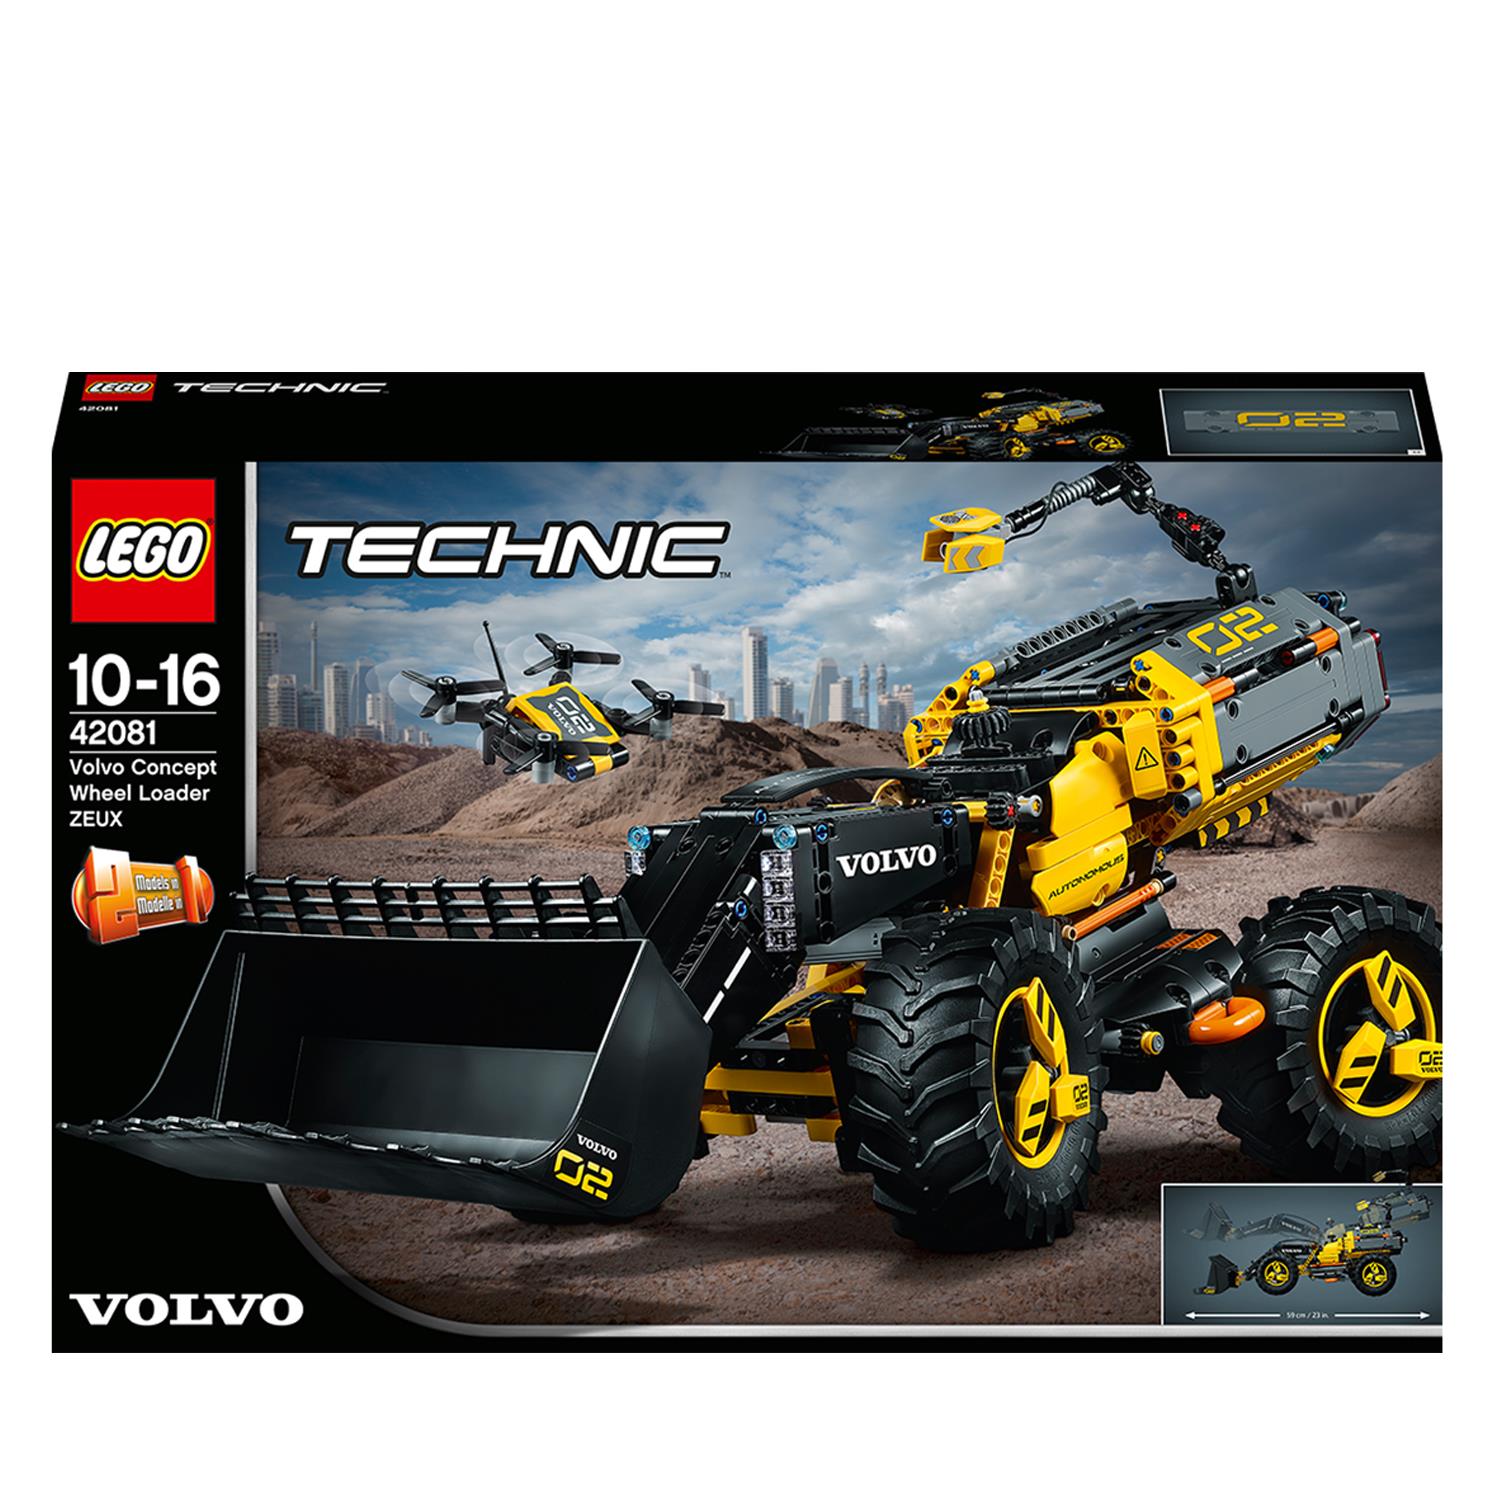 LEGO Technic Volvo Ruspa